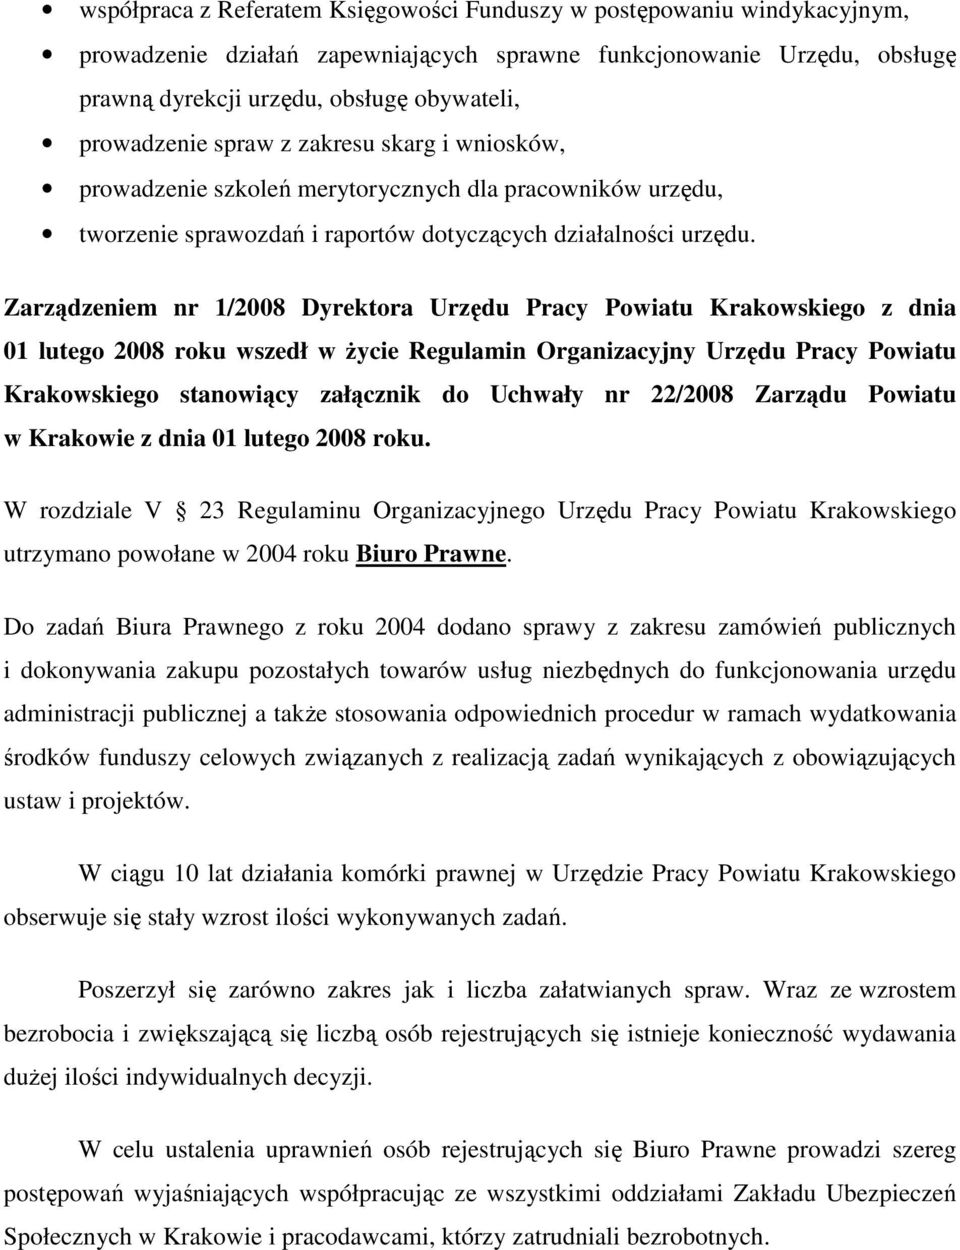 Zarządzeniem nr 1/2008 Dyrektora Urzędu Pracy Powiatu Krakowskiego z dnia 01 lutego 2008 roku wszedł w życie Regulamin Organizacyjny Urzędu Pracy Powiatu Krakowskiego stanowiący załącznik do Uchwały